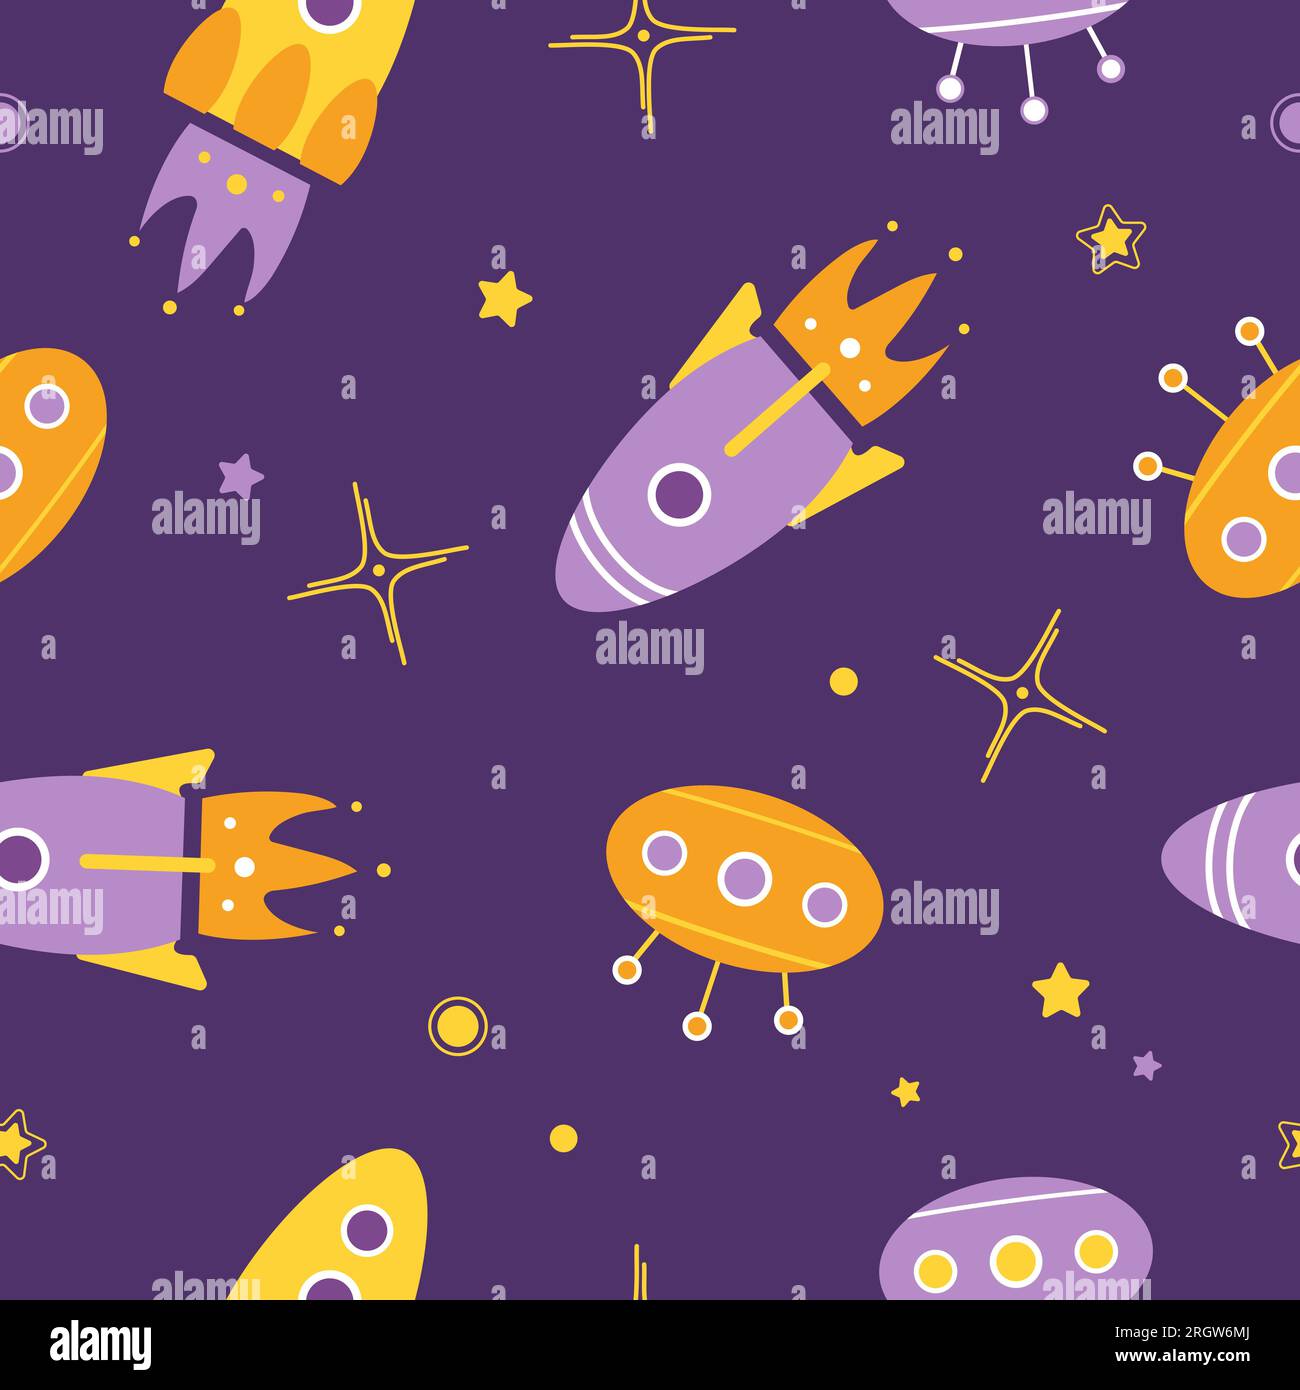 Papel Pintado Infantil Con Cohetes Del Espacio Y Constelaciones